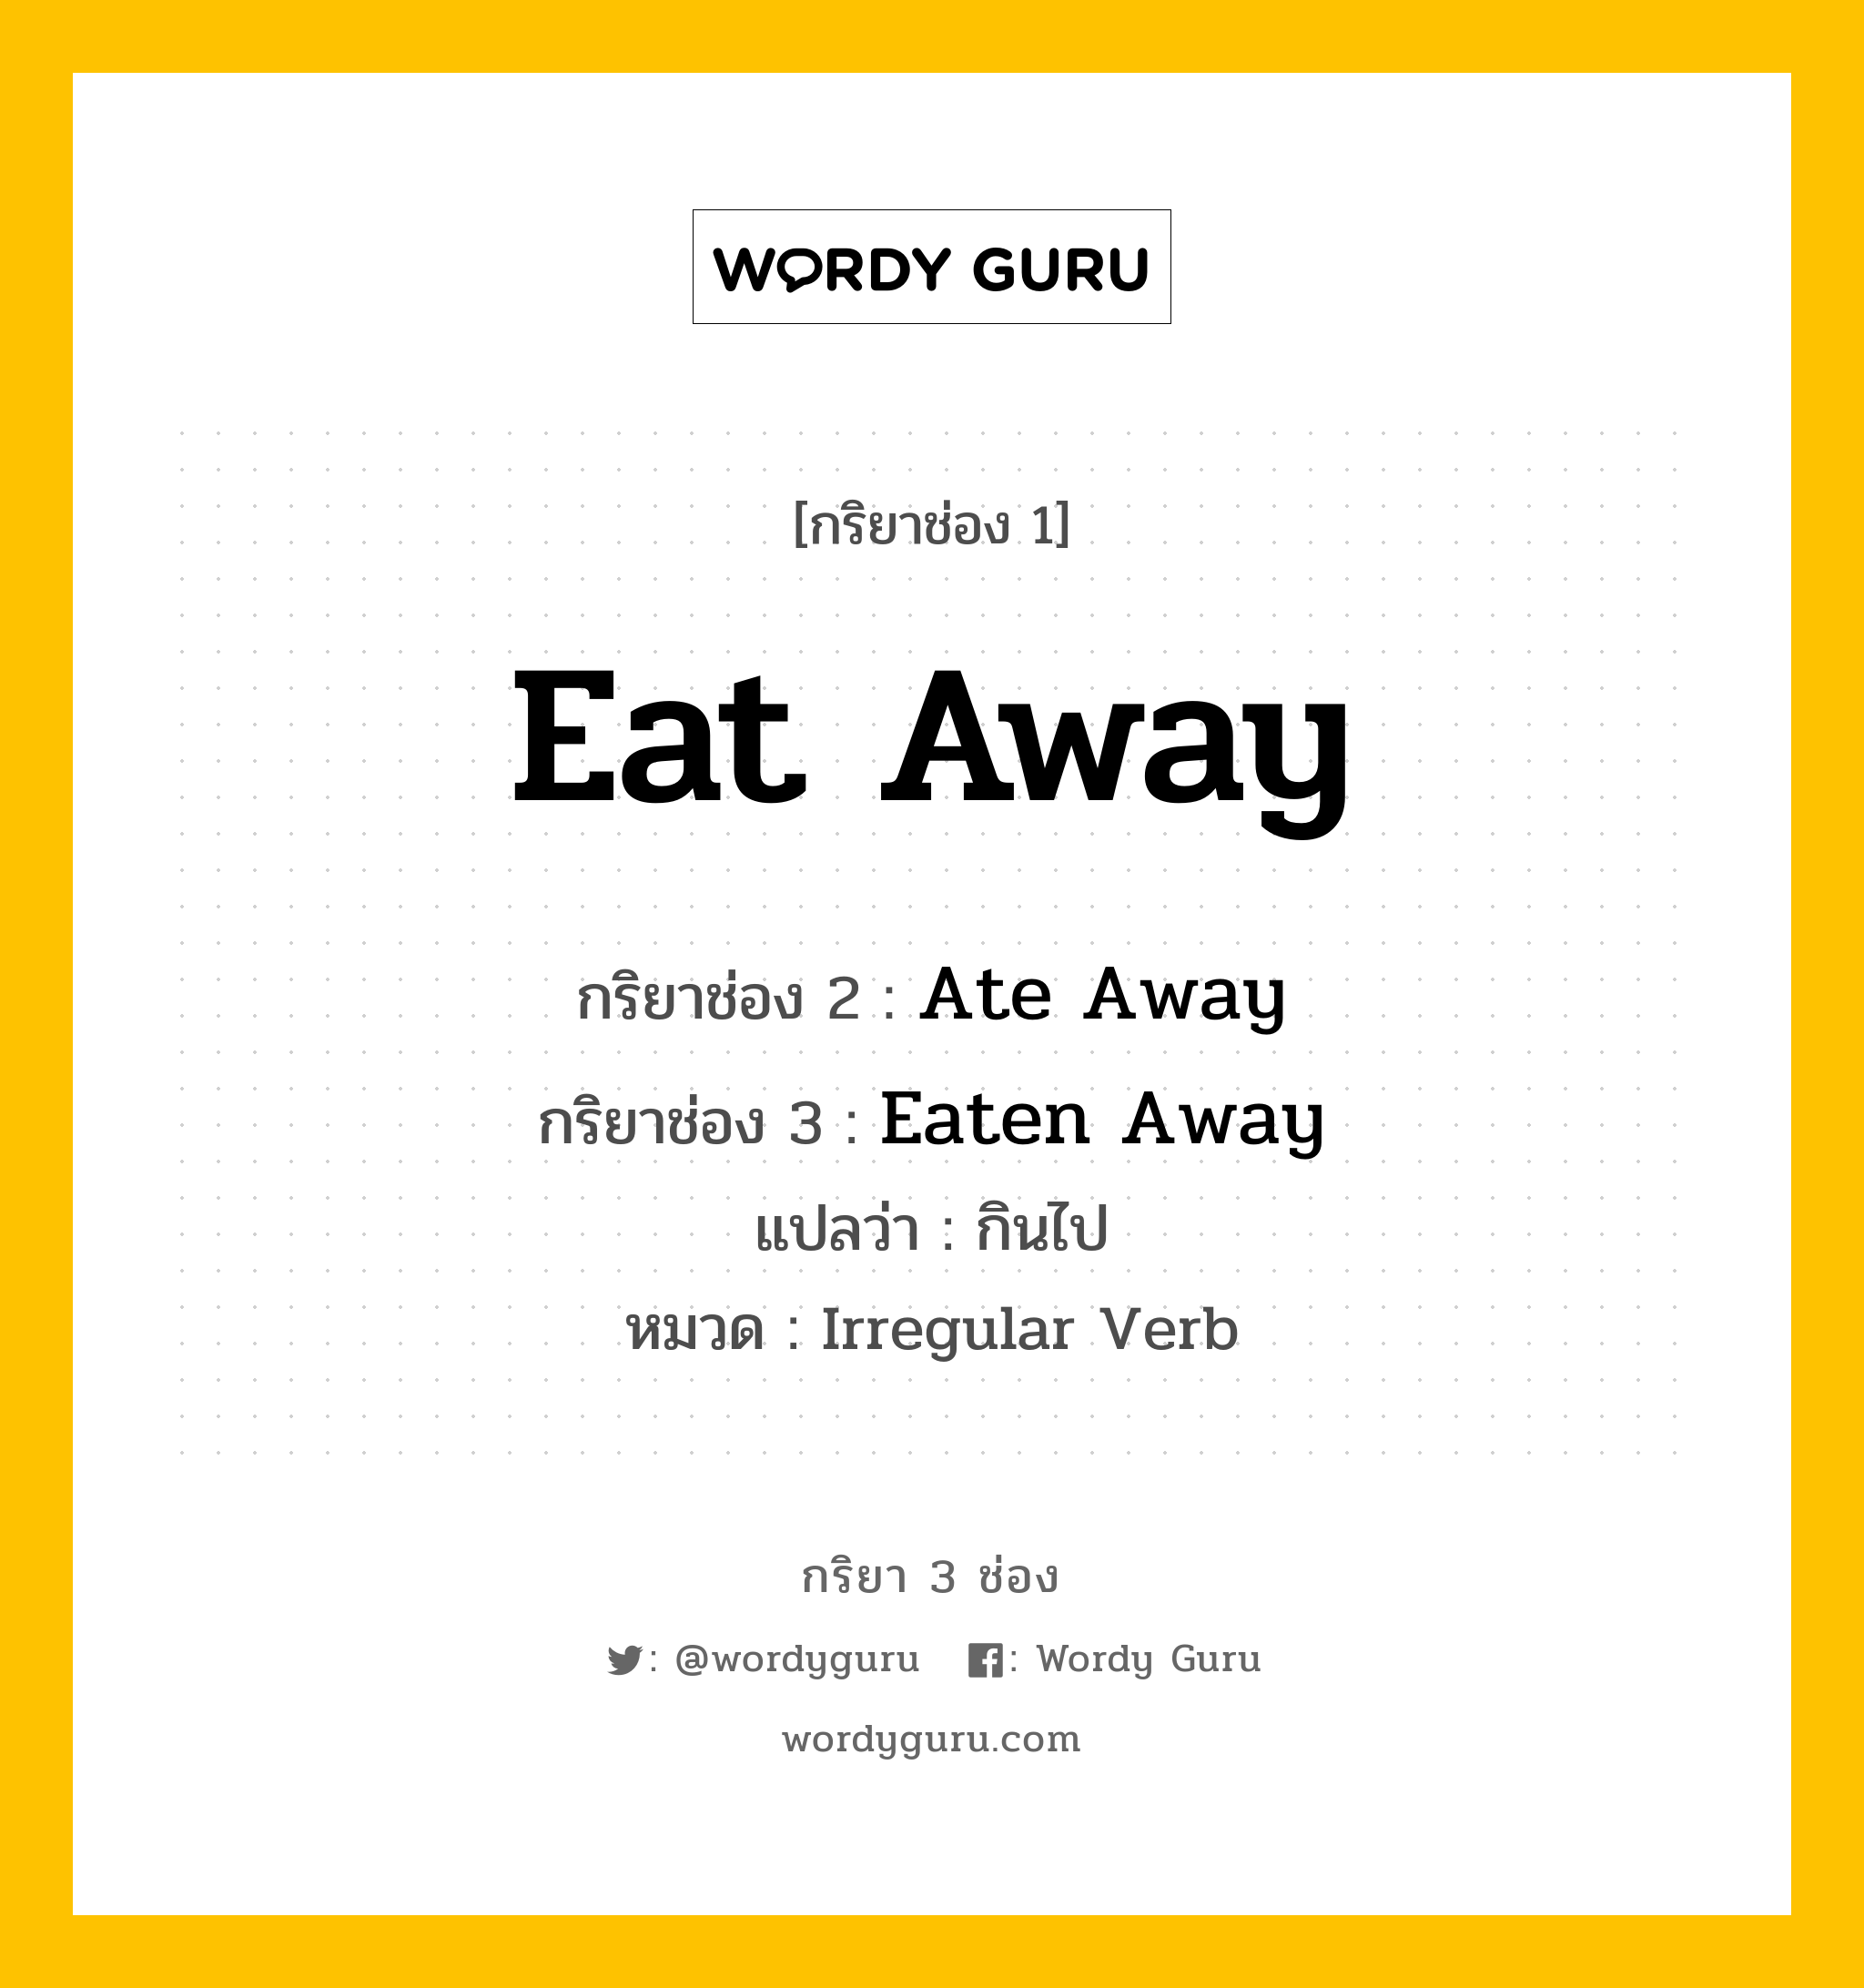 กริยา 3 ช่อง: Eat Away ช่อง 2 Eat Away ช่อง 3 คืออะไร, กริยาช่อง 1 Eat Away กริยาช่อง 2 Ate Away กริยาช่อง 3 Eaten Away แปลว่า กินไป หมวด Irregular Verb หมวด Irregular Verb